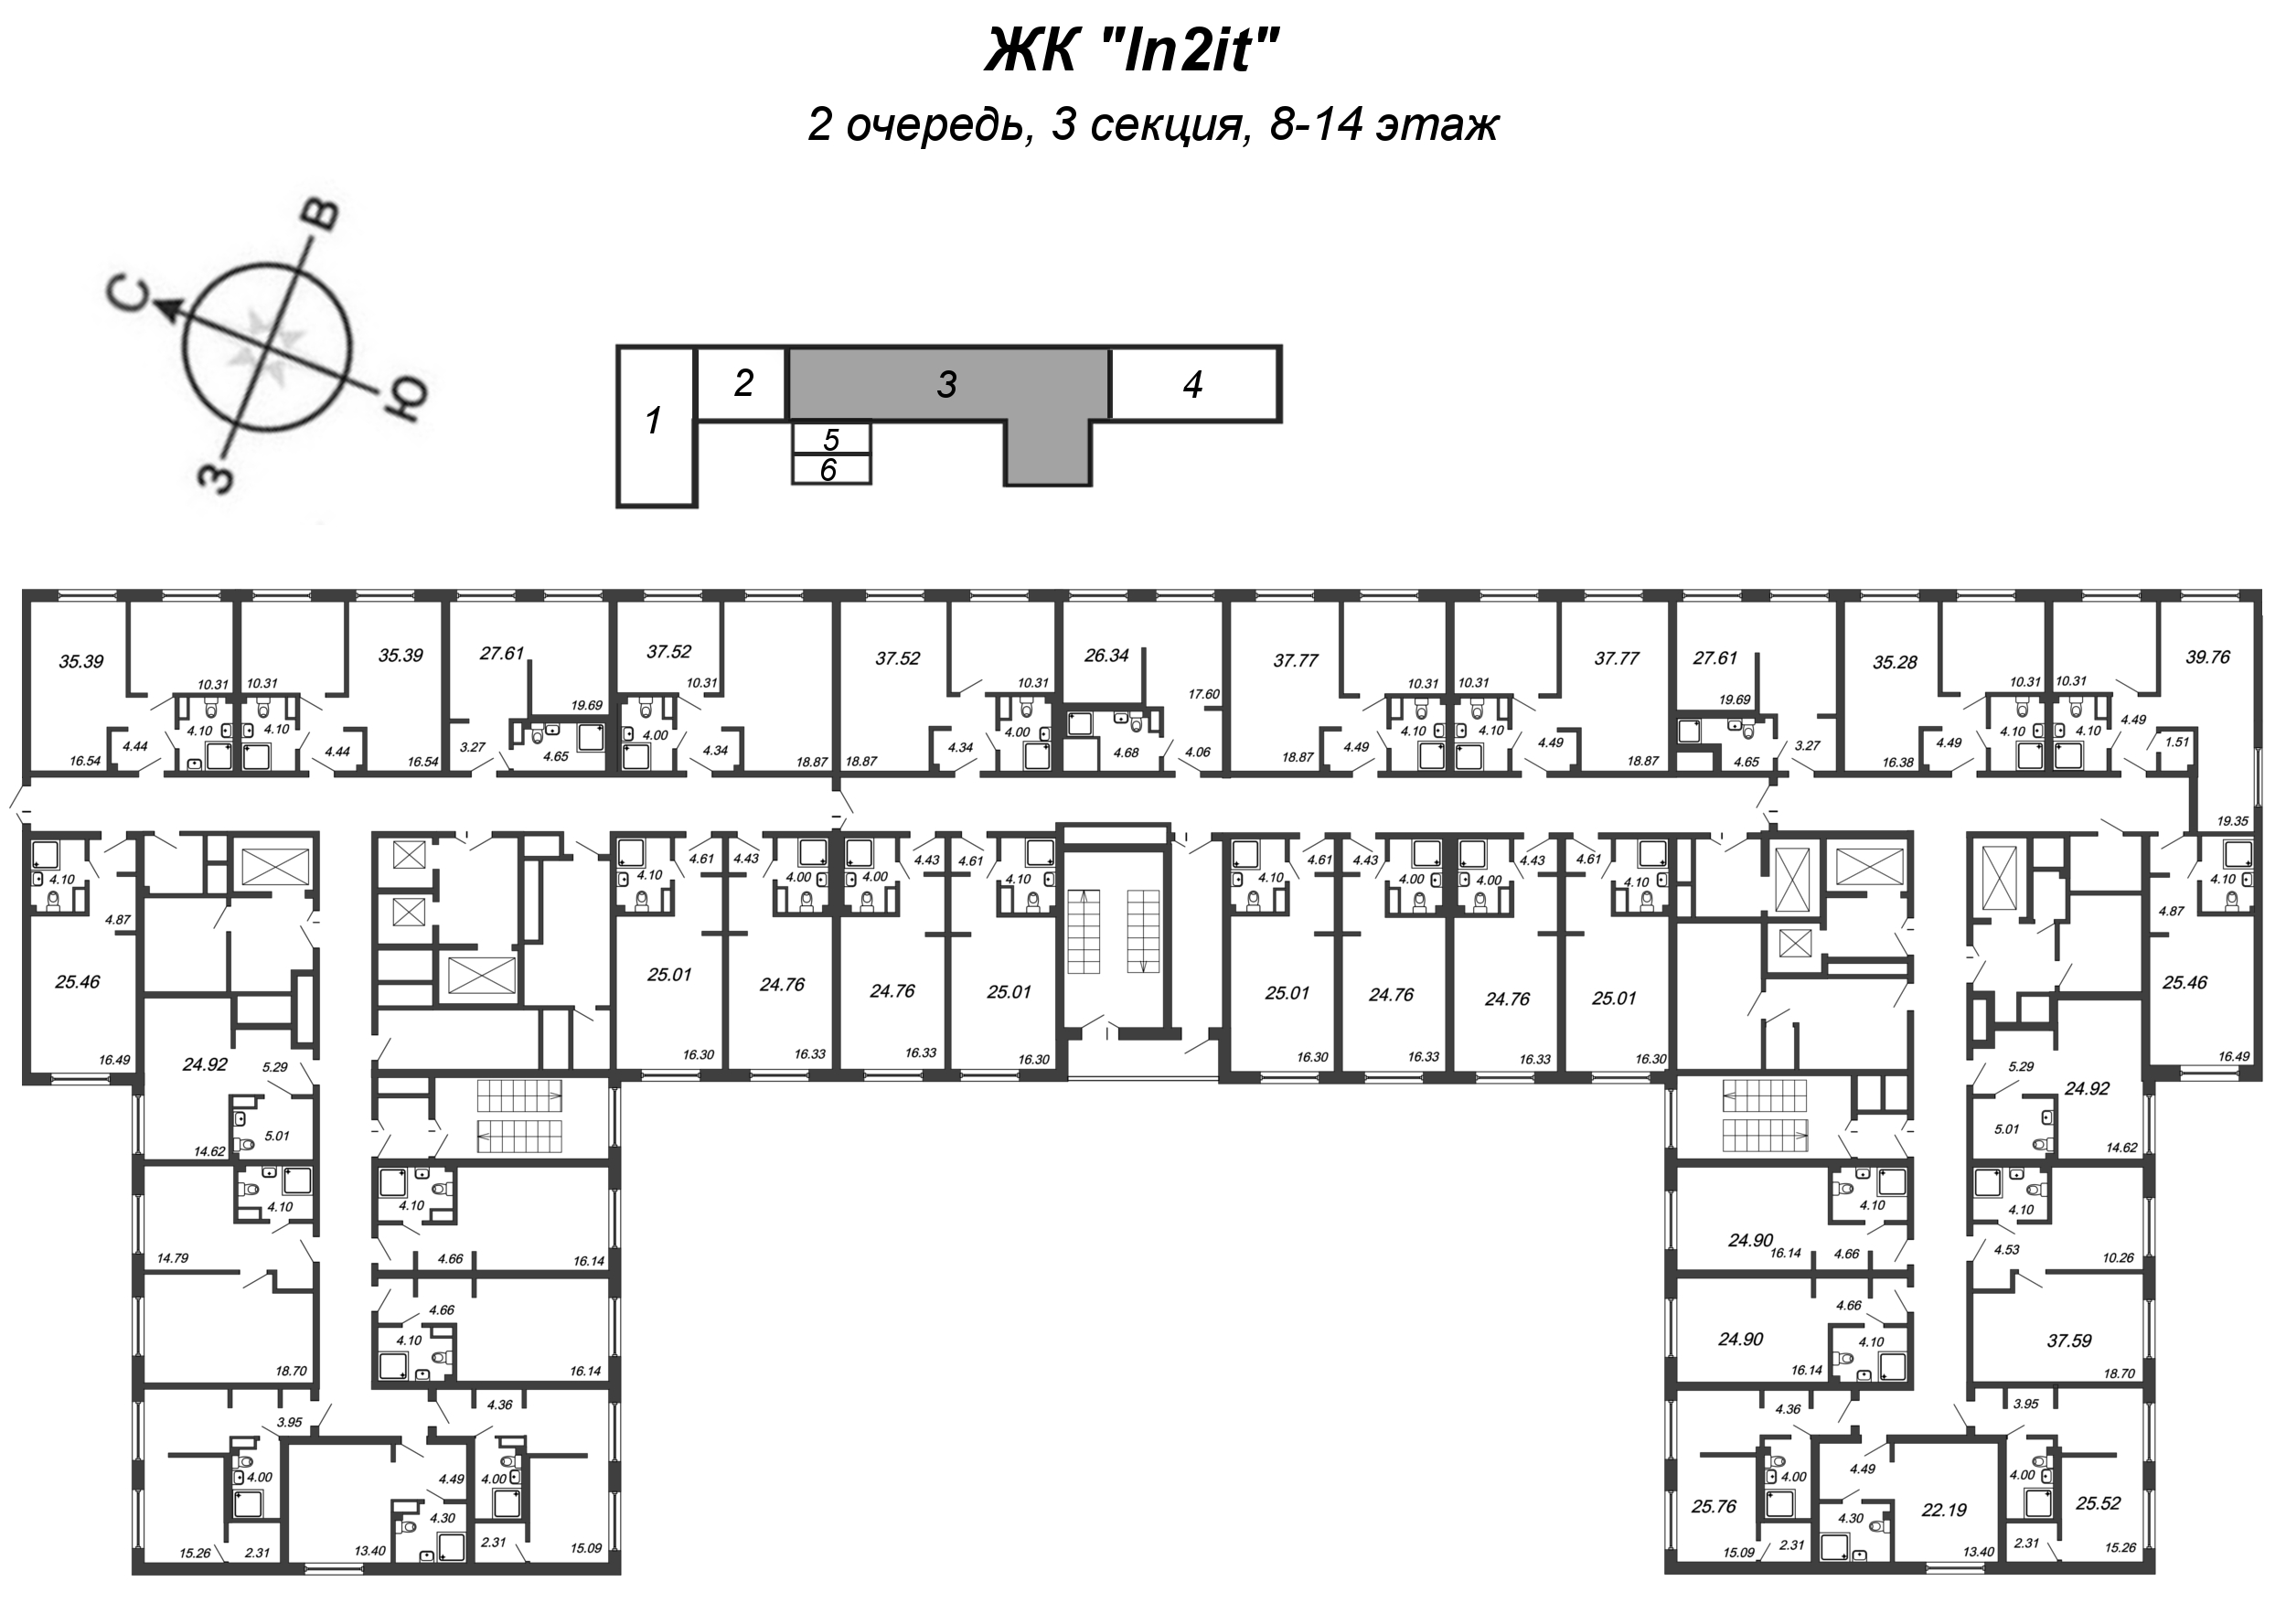 Квартира-студия, 25.01 м² в ЖК "In2it" - планировка этажа